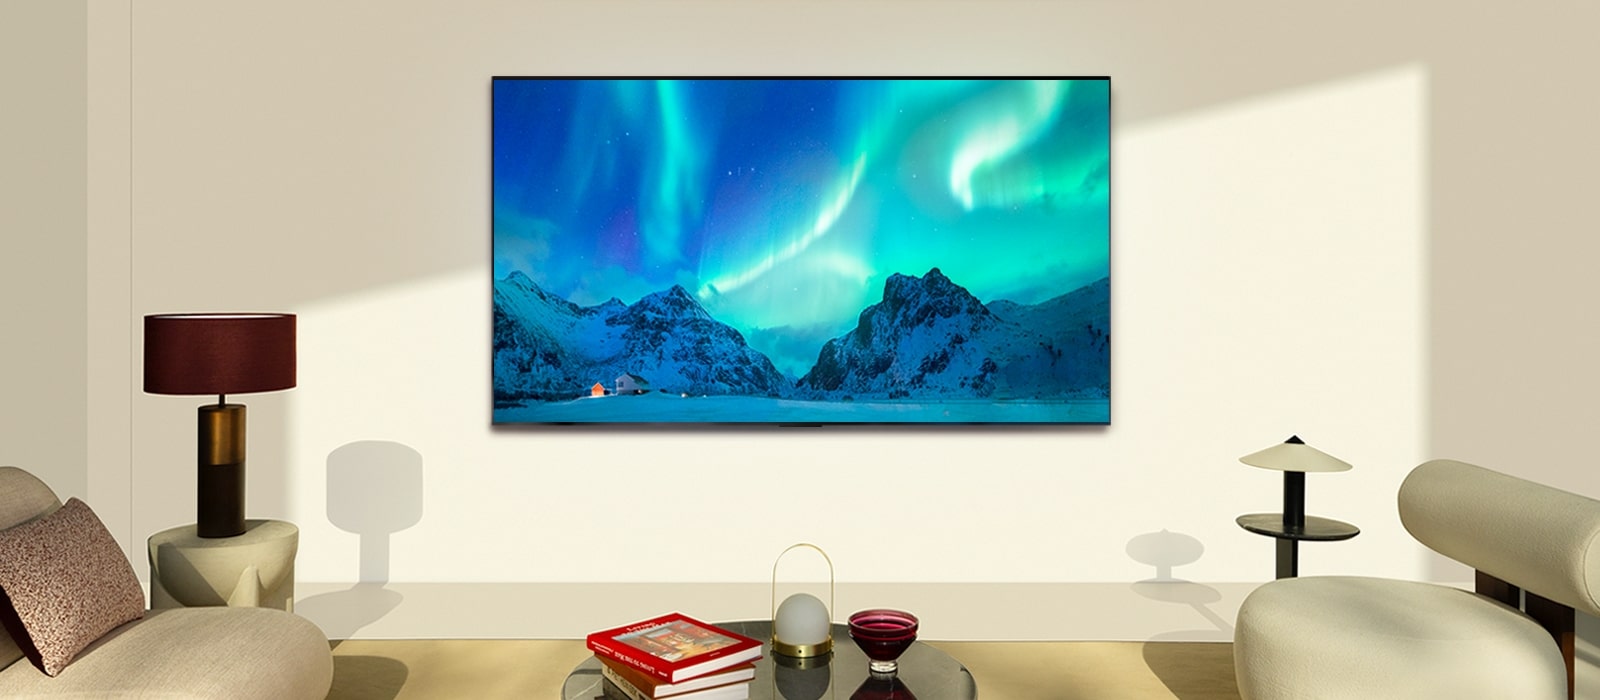 Televisor LG OLED en un salón moderno durante el día. Se muestra en la pantalla la imagen de la aurora boreal con los niveles de brillo ideales.